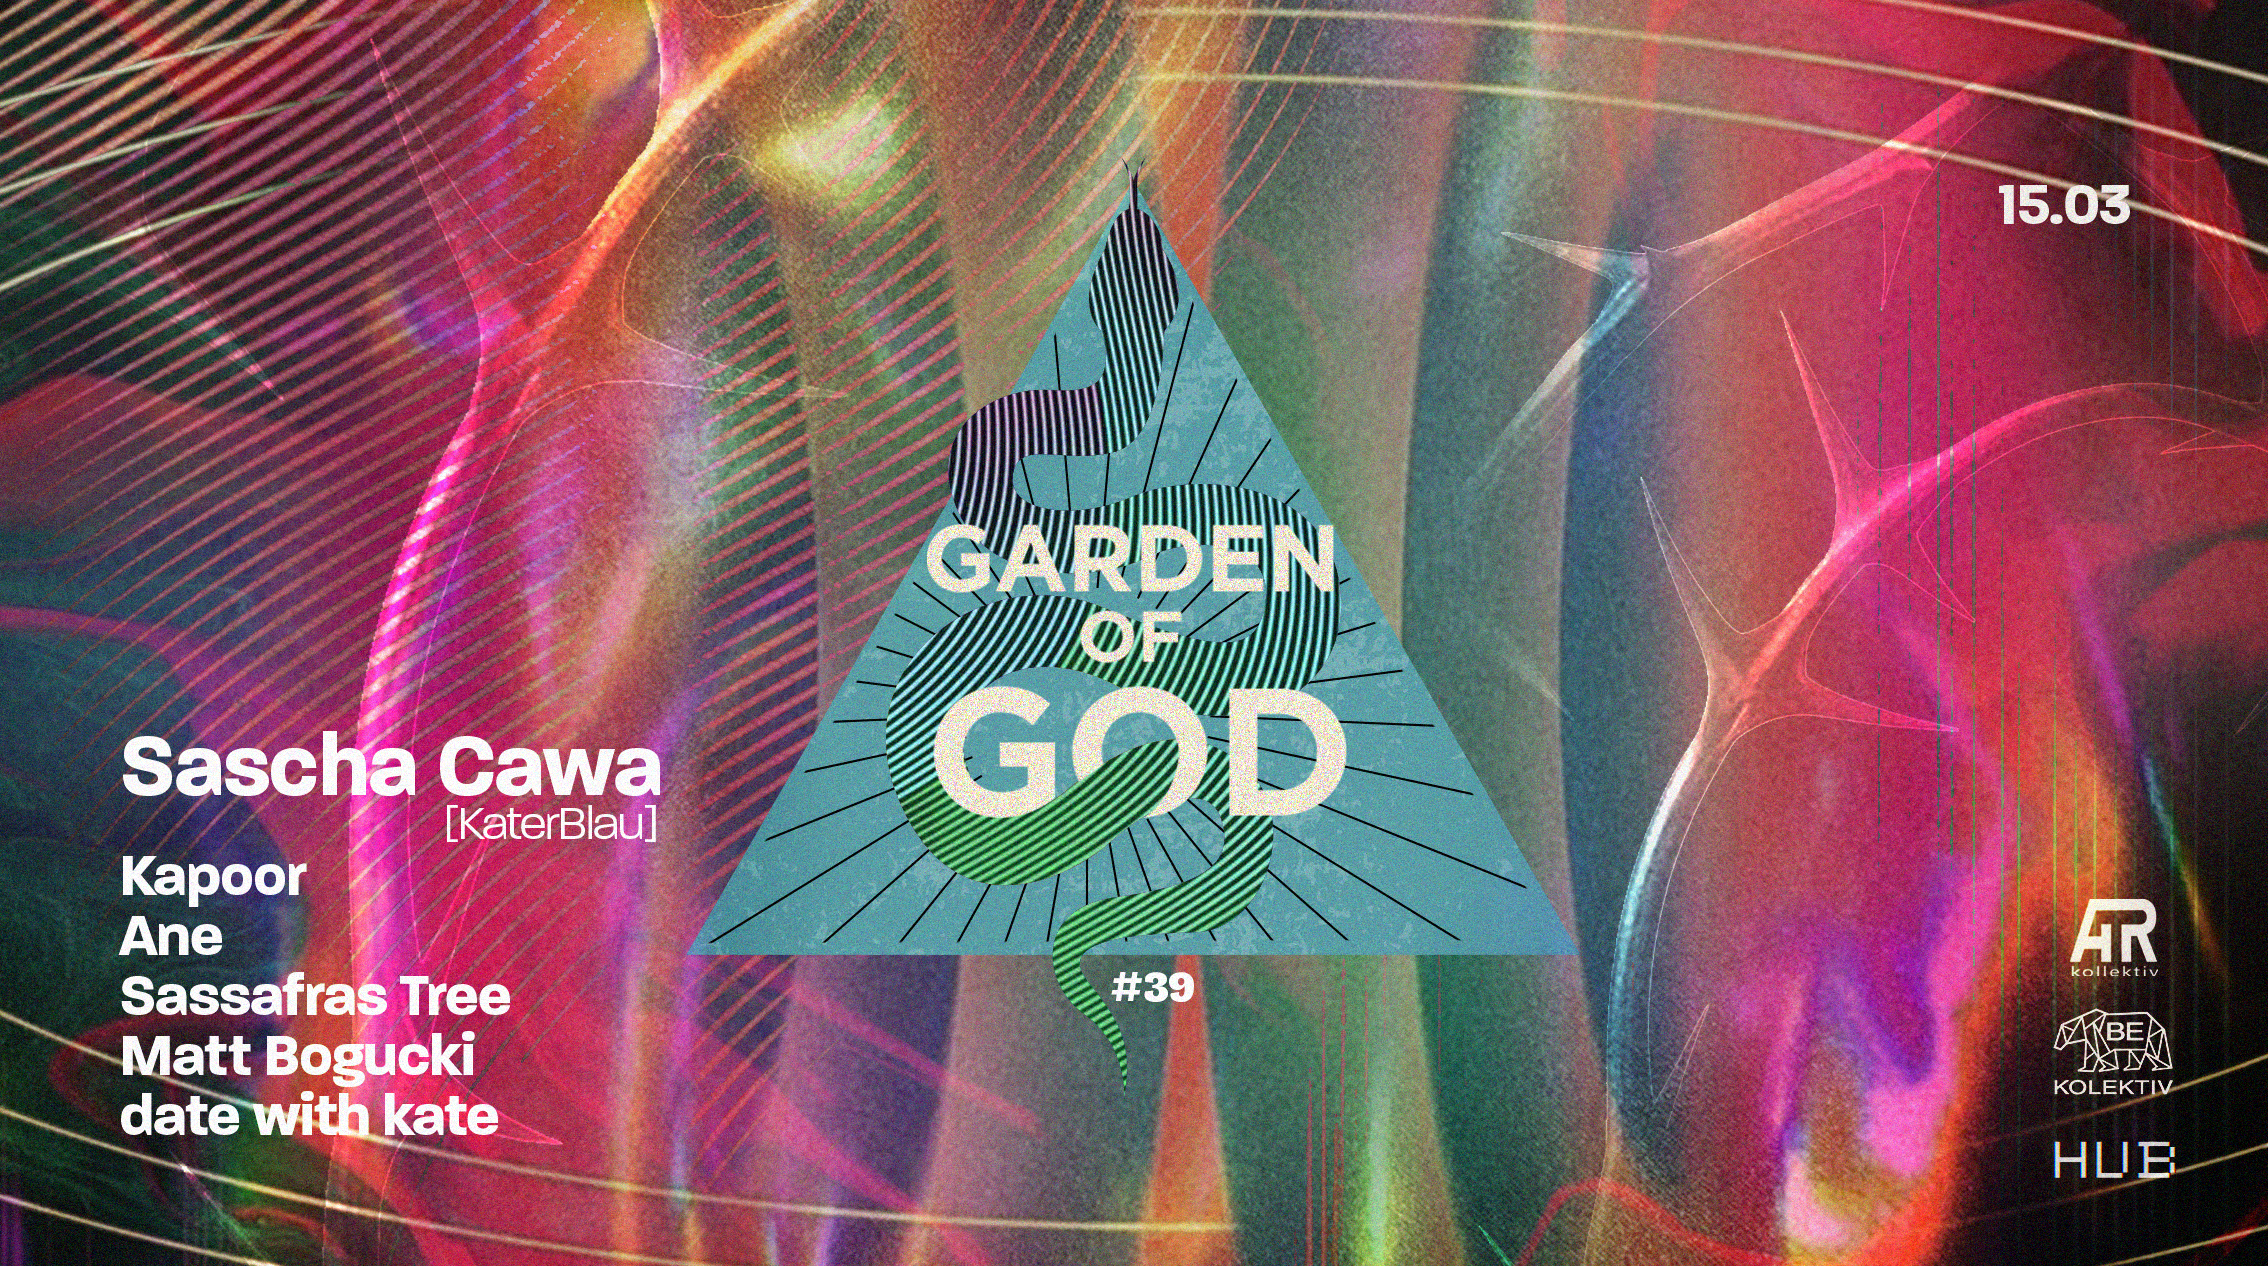 Garden of God #39: Sascha Cawa (KaterBlau) - Página frontal